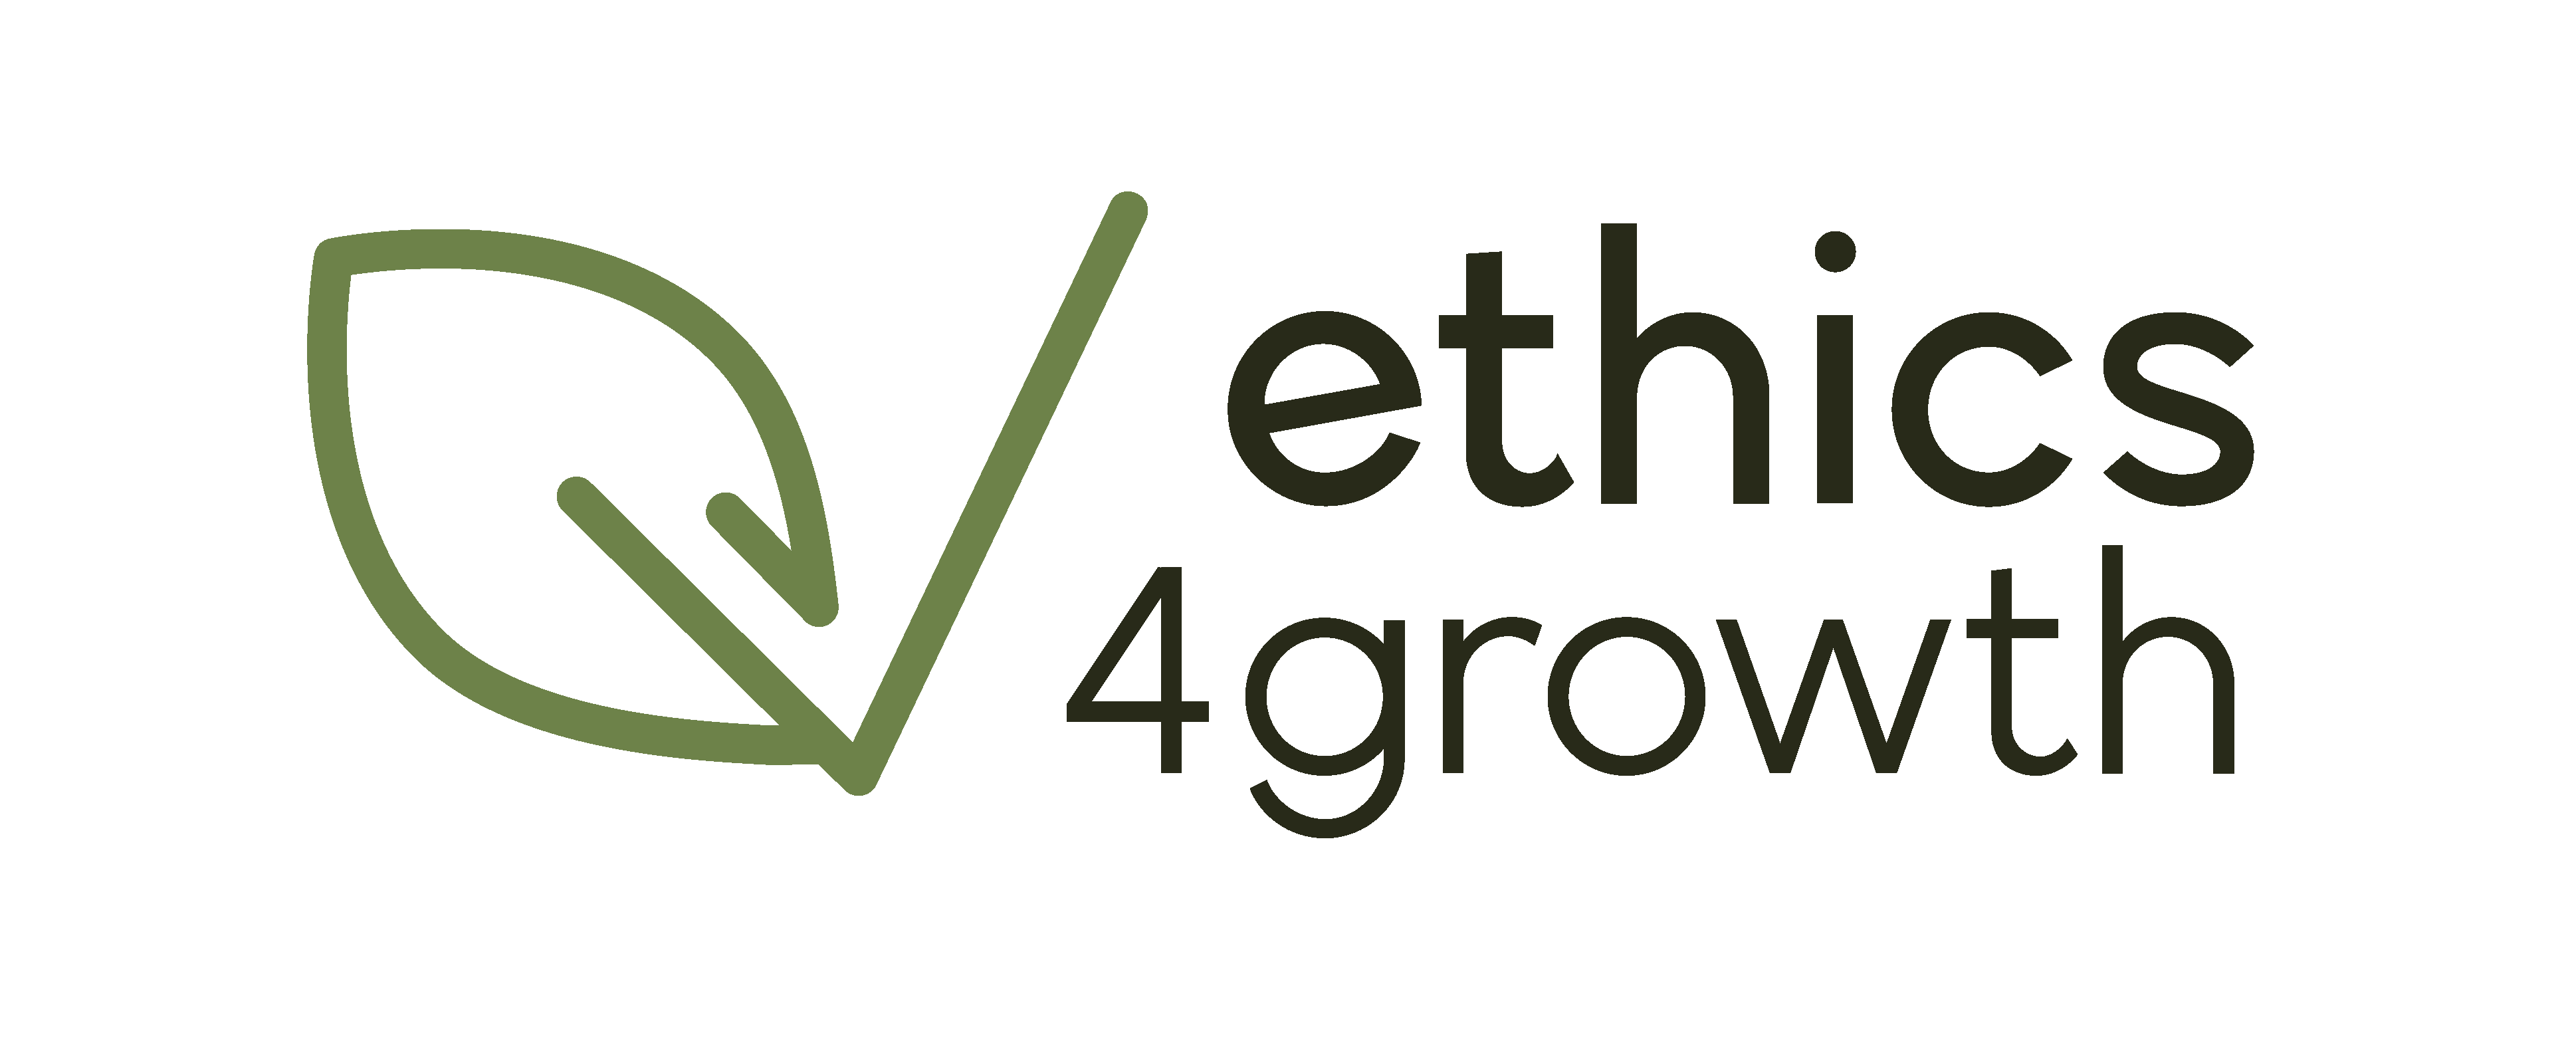 Logo ethics4growth transparente